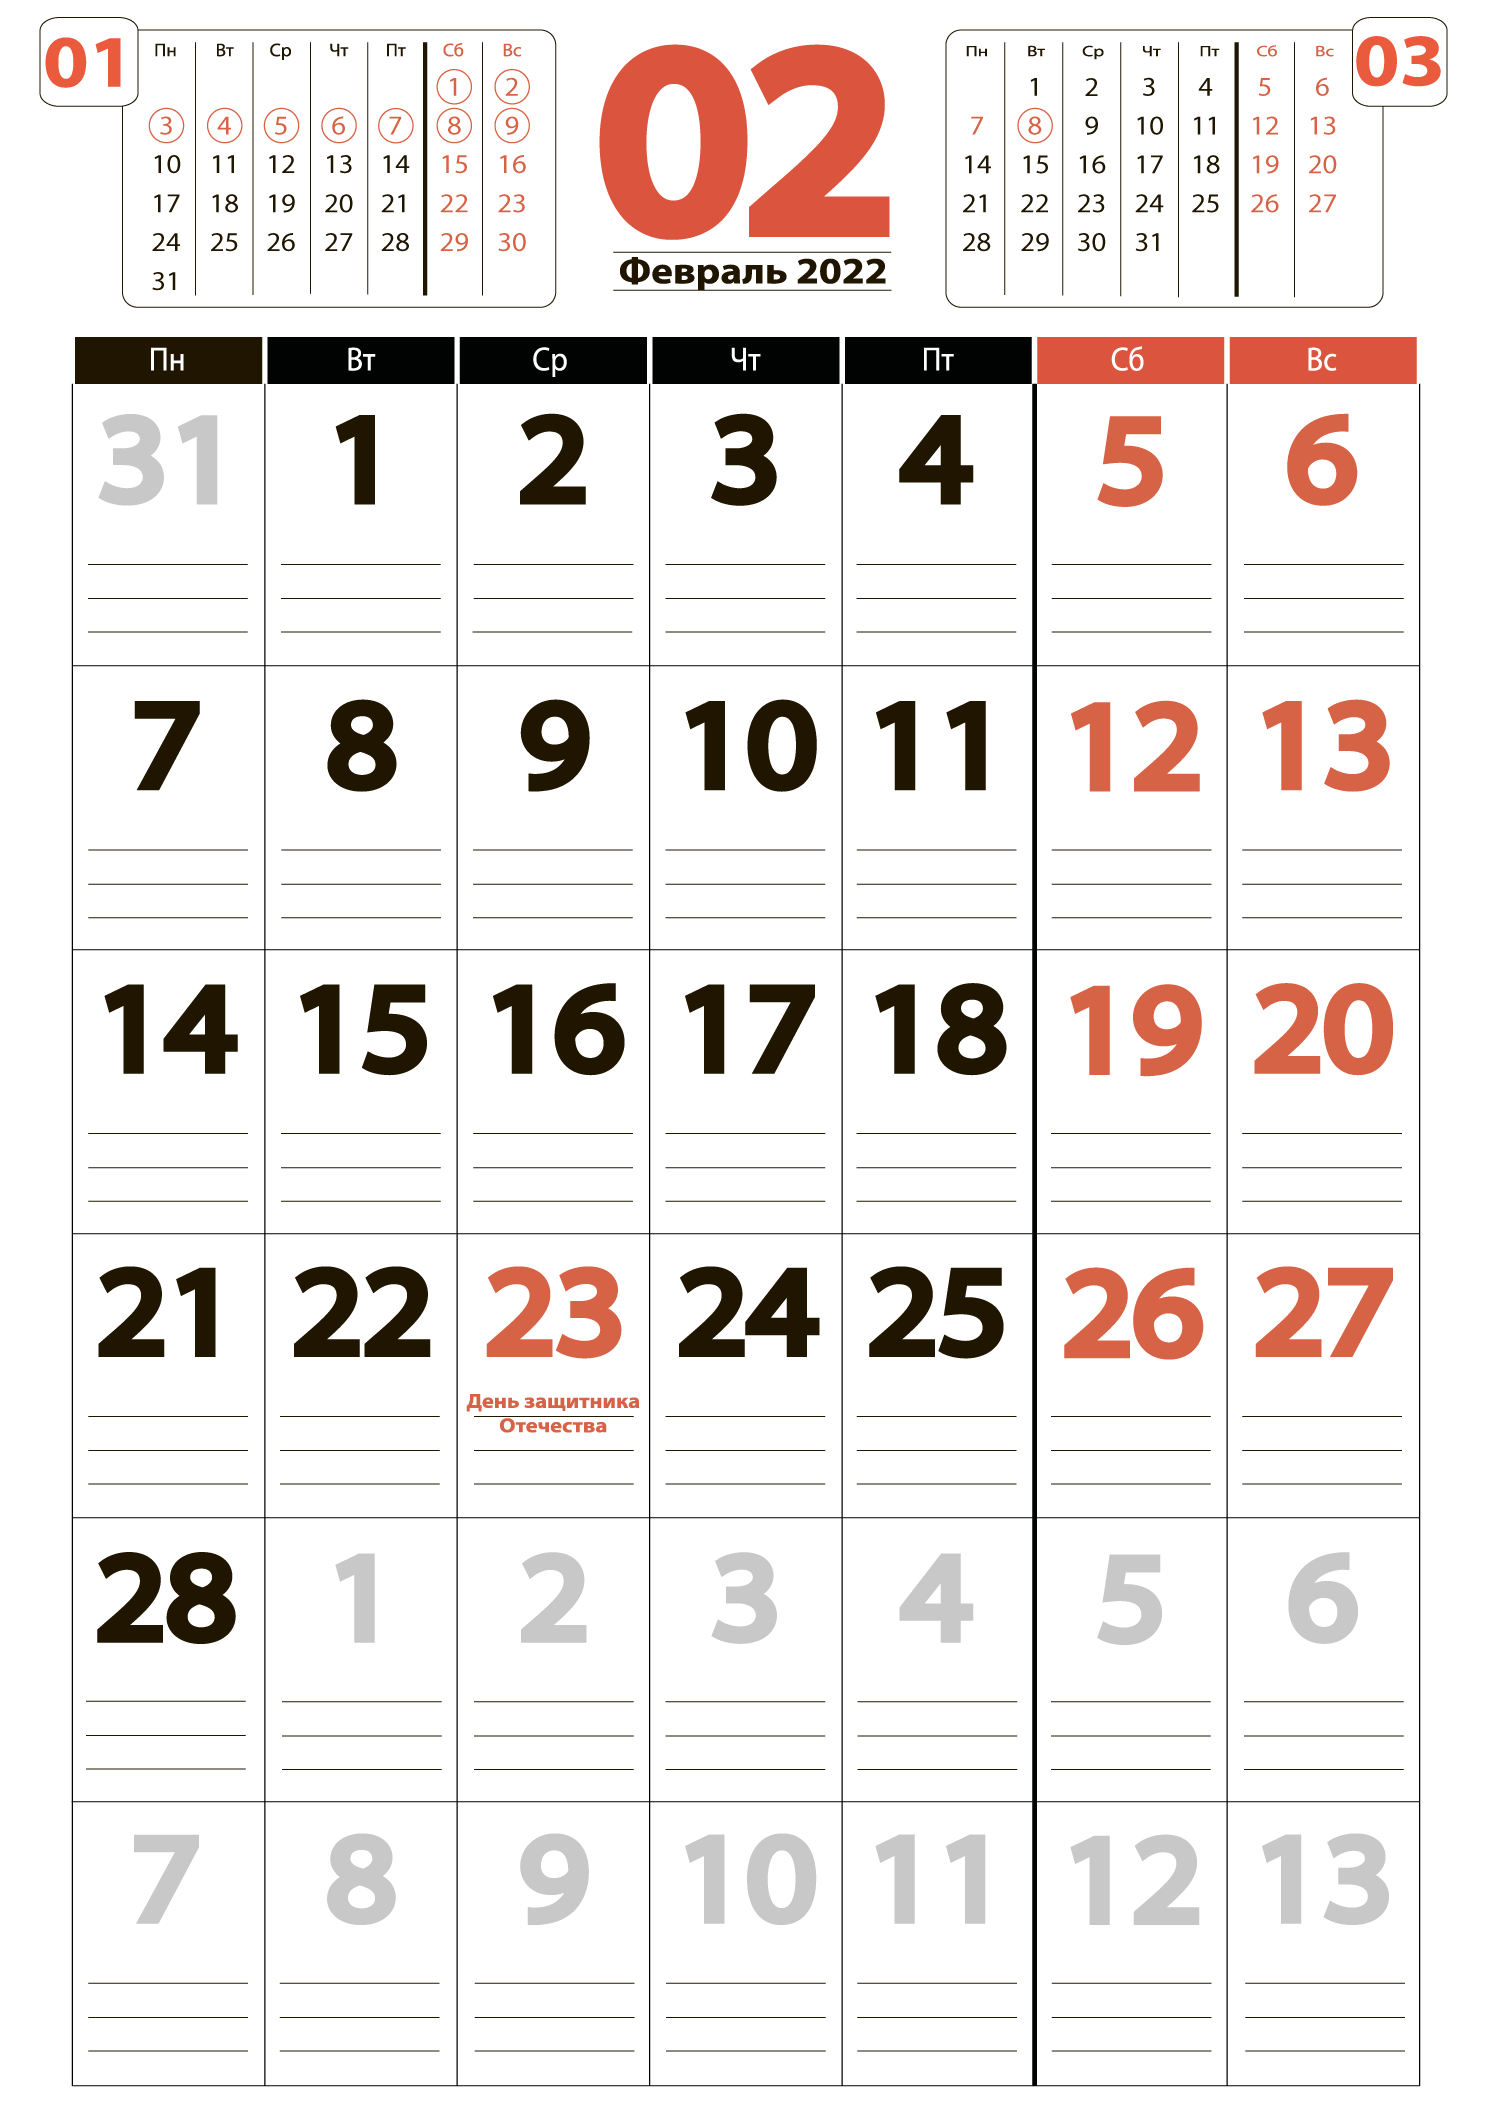 Печать крупного календаря на февраль 2022